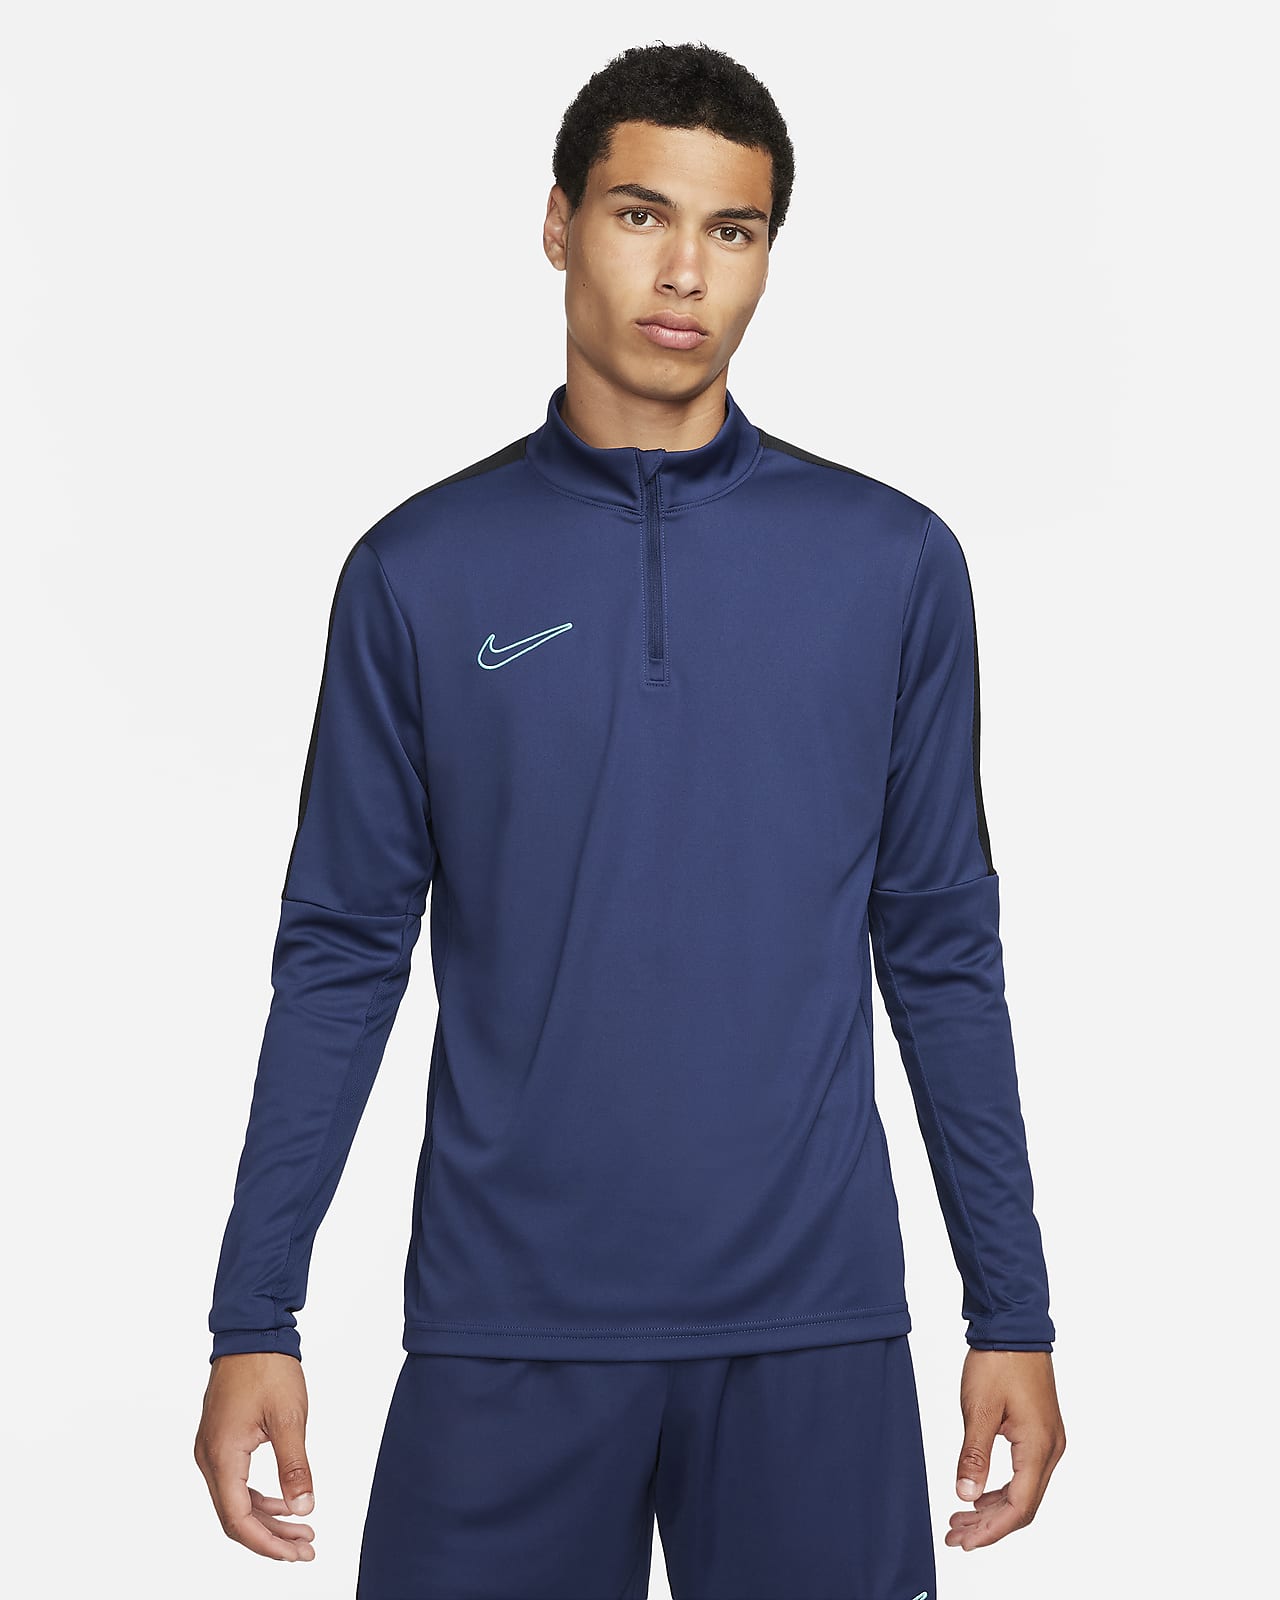 Ανδρική ποδοσφαιρική μπλούζα Dri-FIT με φερμουάρ στο 1/2 του μήκους Nike Academy